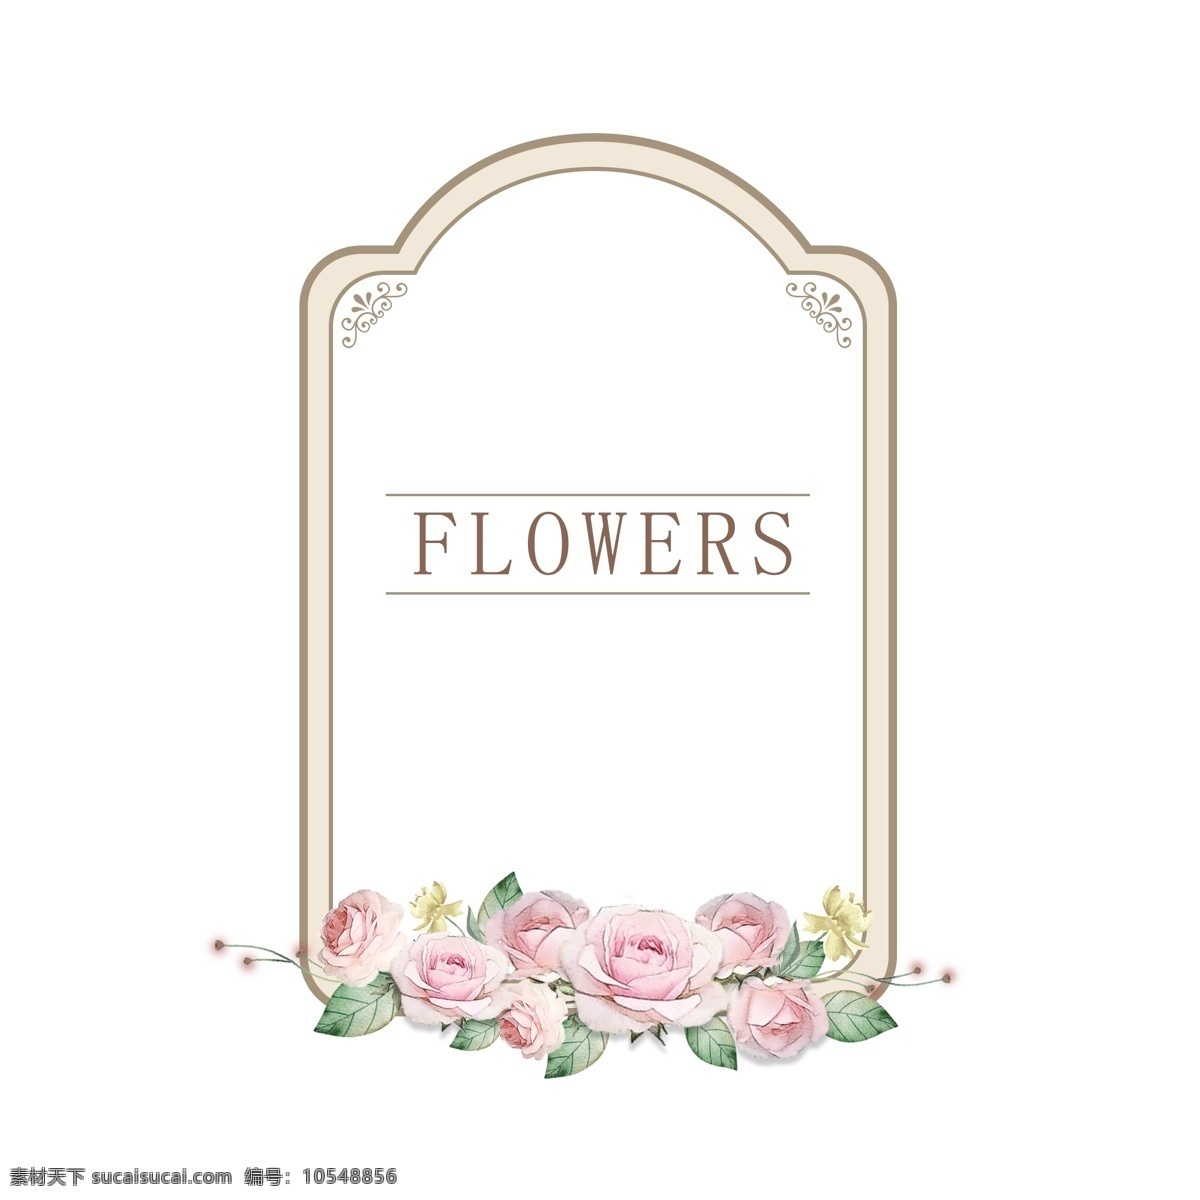 水彩 手绘 复古 欧式 花卉 玫瑰 植物 边框 清新 浪漫